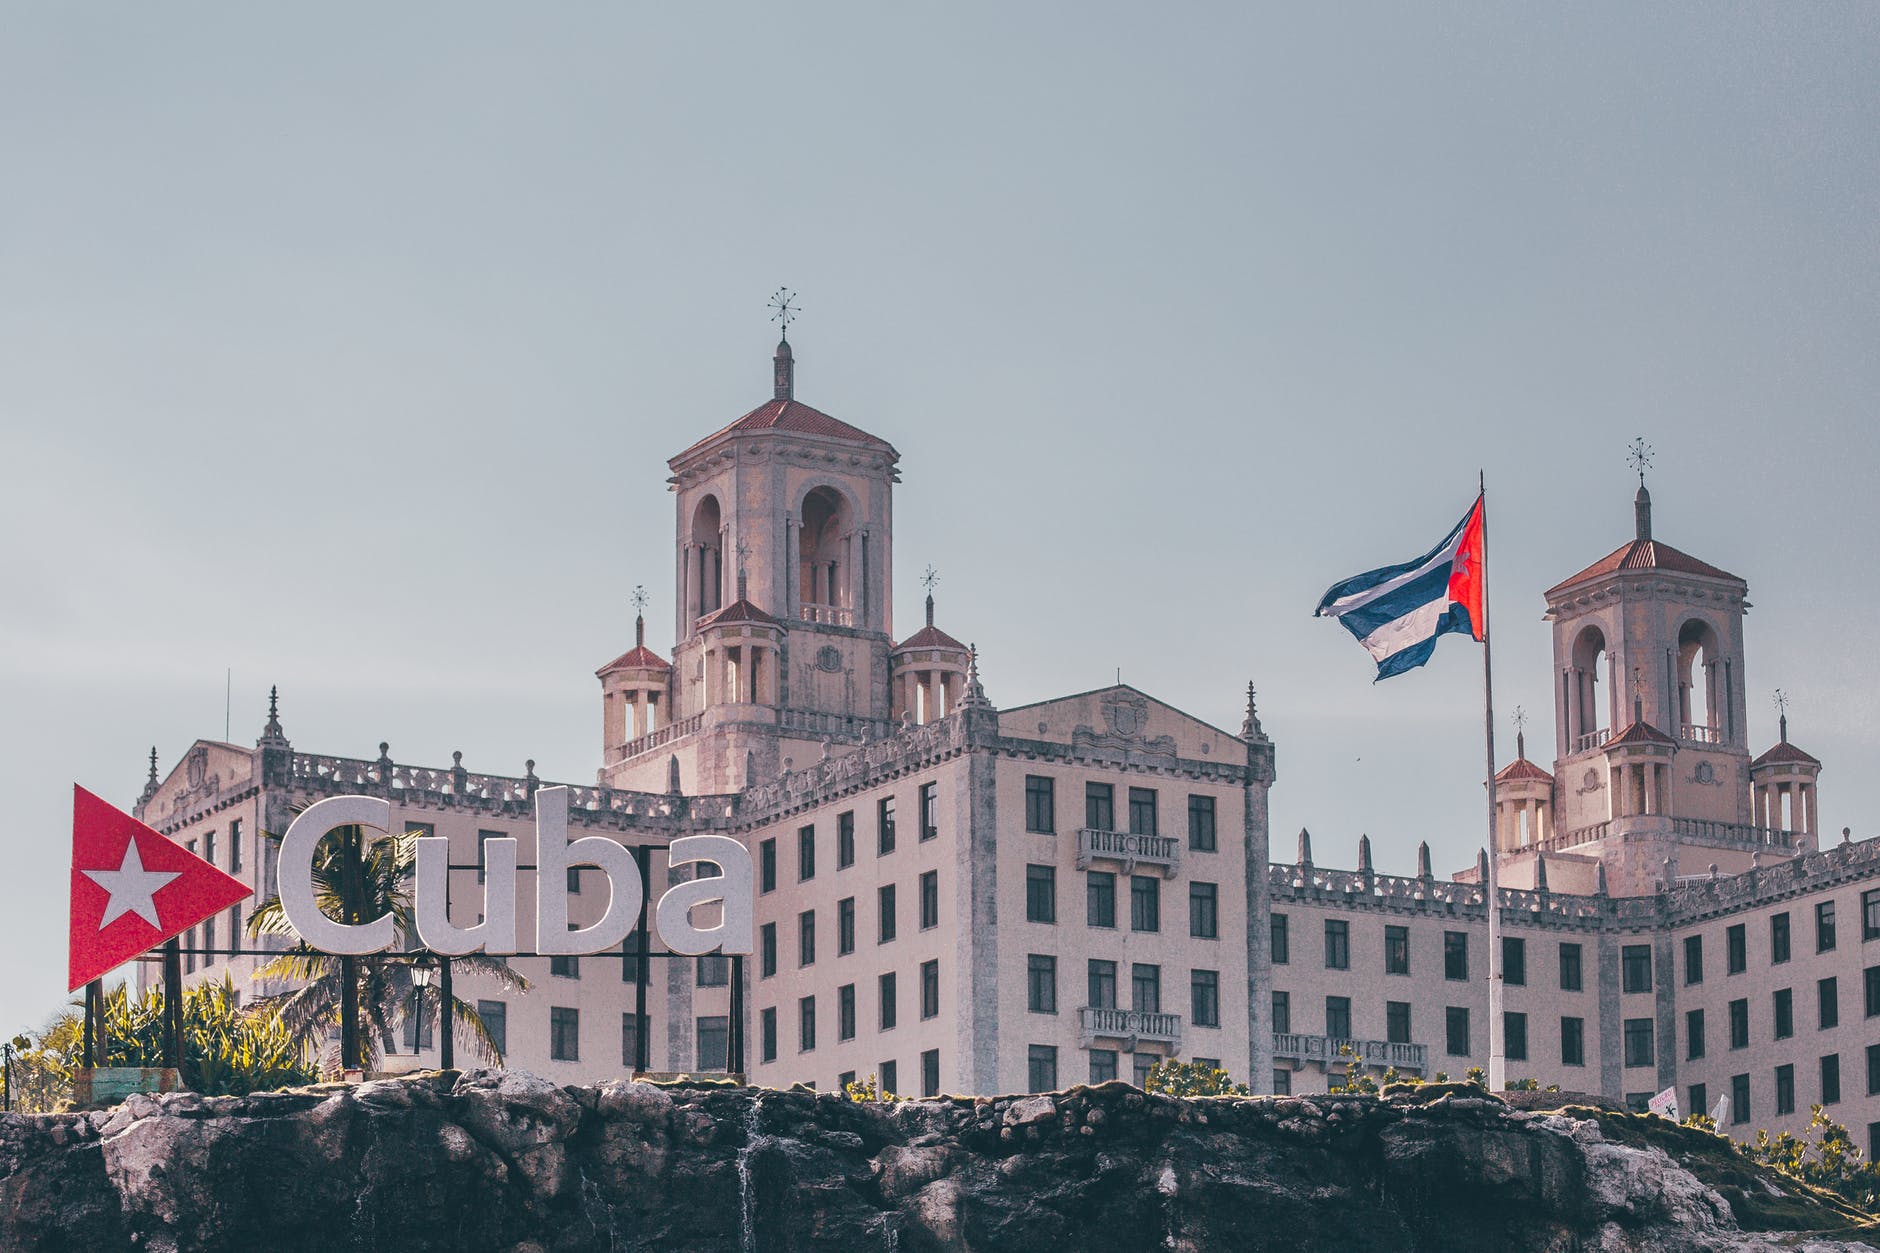 The U.S. Put Limits On Flights To Cuba